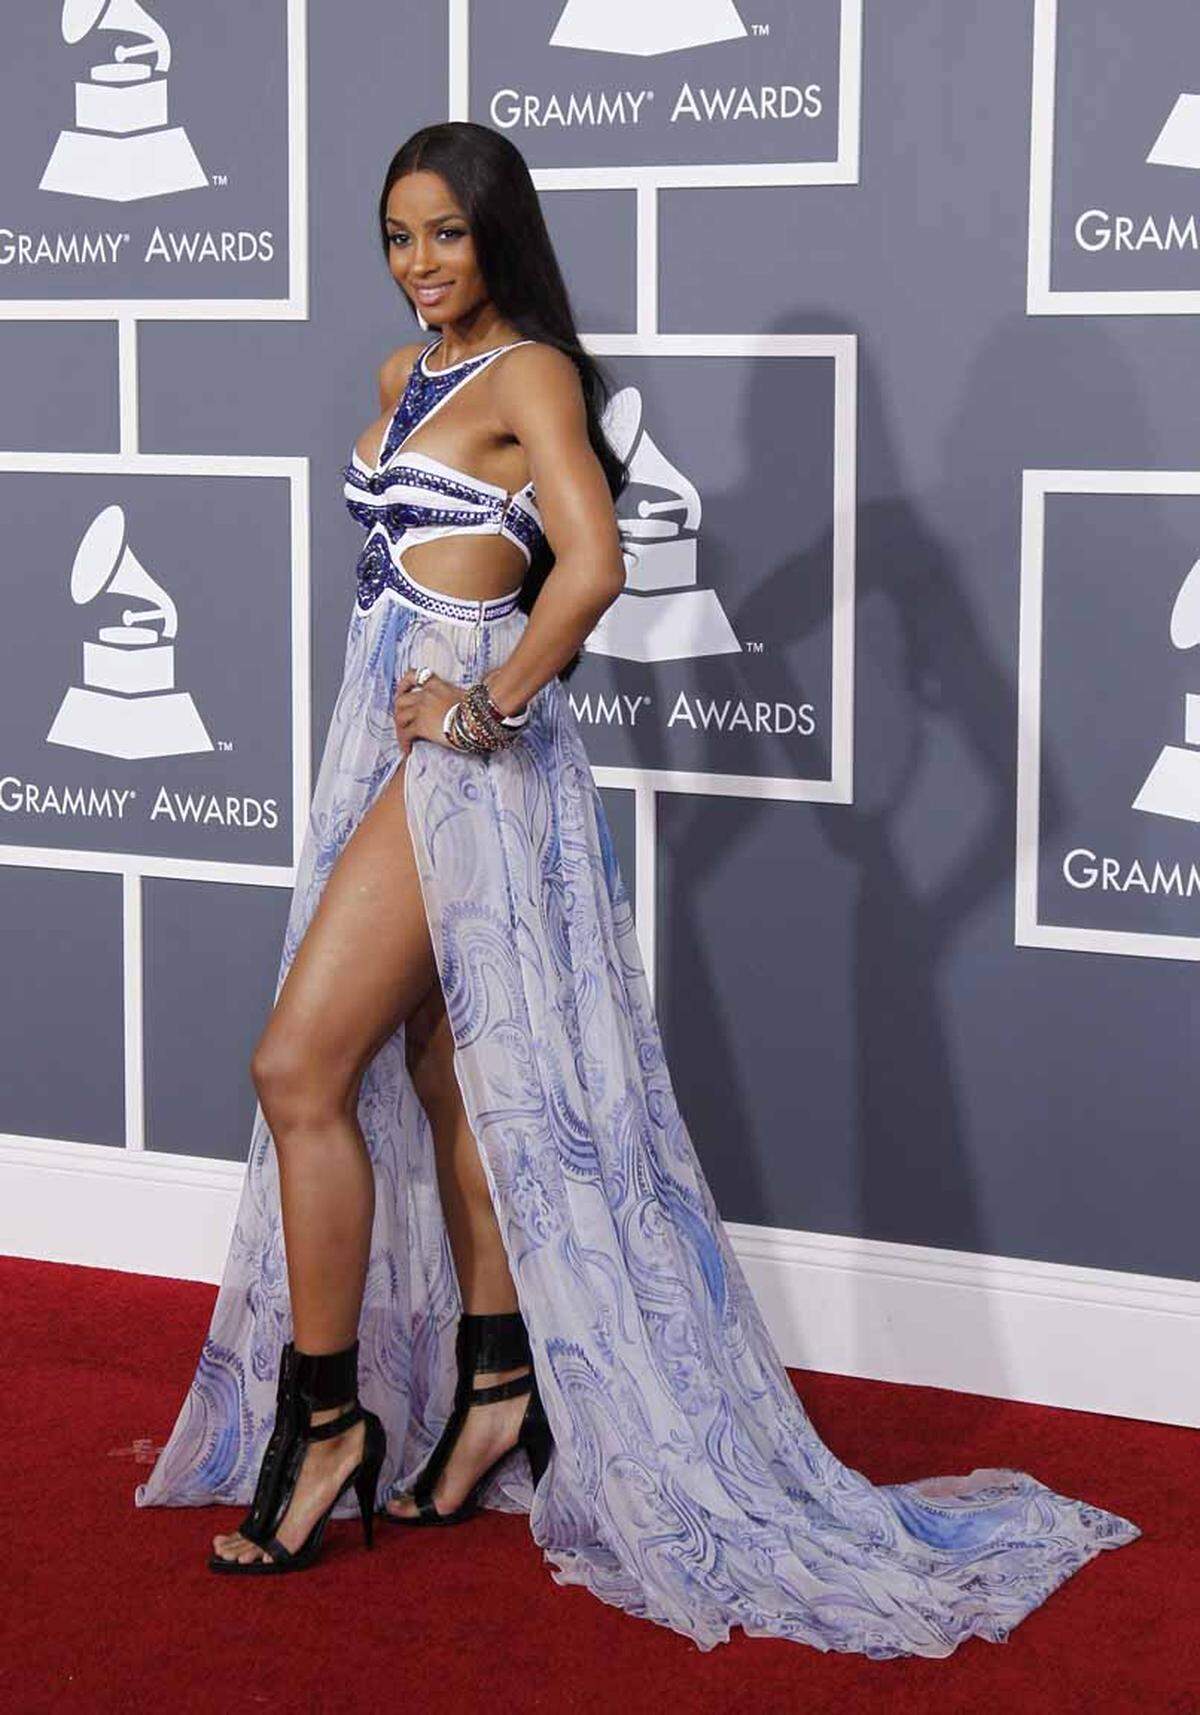 Ein Dresscode mit Richtlinien für das passende Outfit für die Grammy Awards wurde veröffentlicht, angeblich ist der Absender das TV-Netzwerk CBS.Sängerin Ciara  zeigte viel Bein.